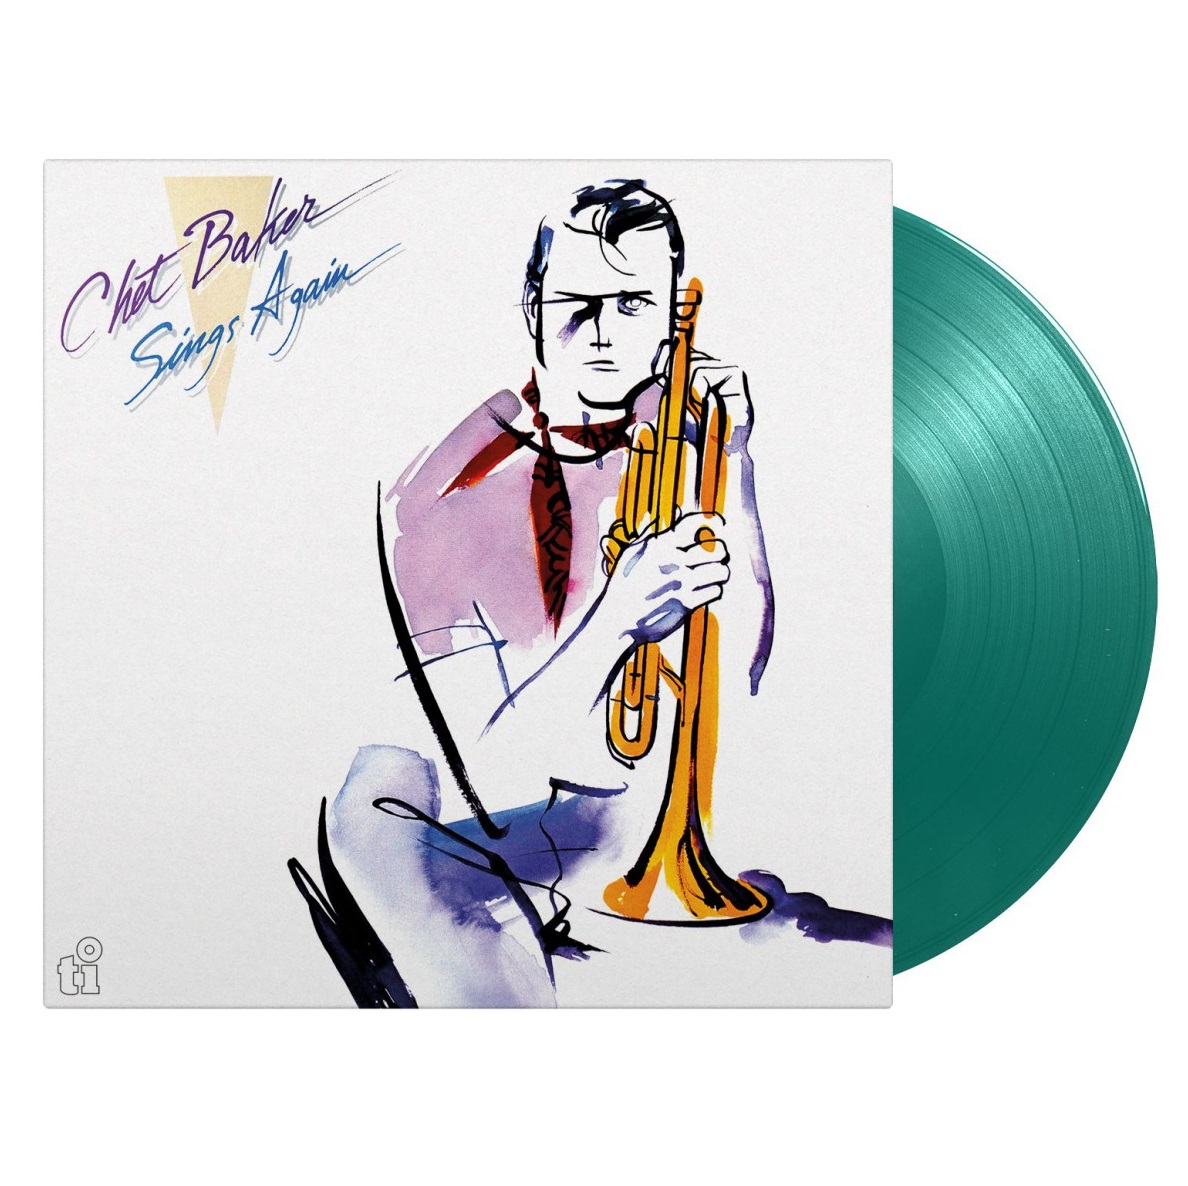 예약판매[PRE-ORDER] Chet Baker (쳇 베이커) - Sings Again [아쿠아 마린 컬러 LP]